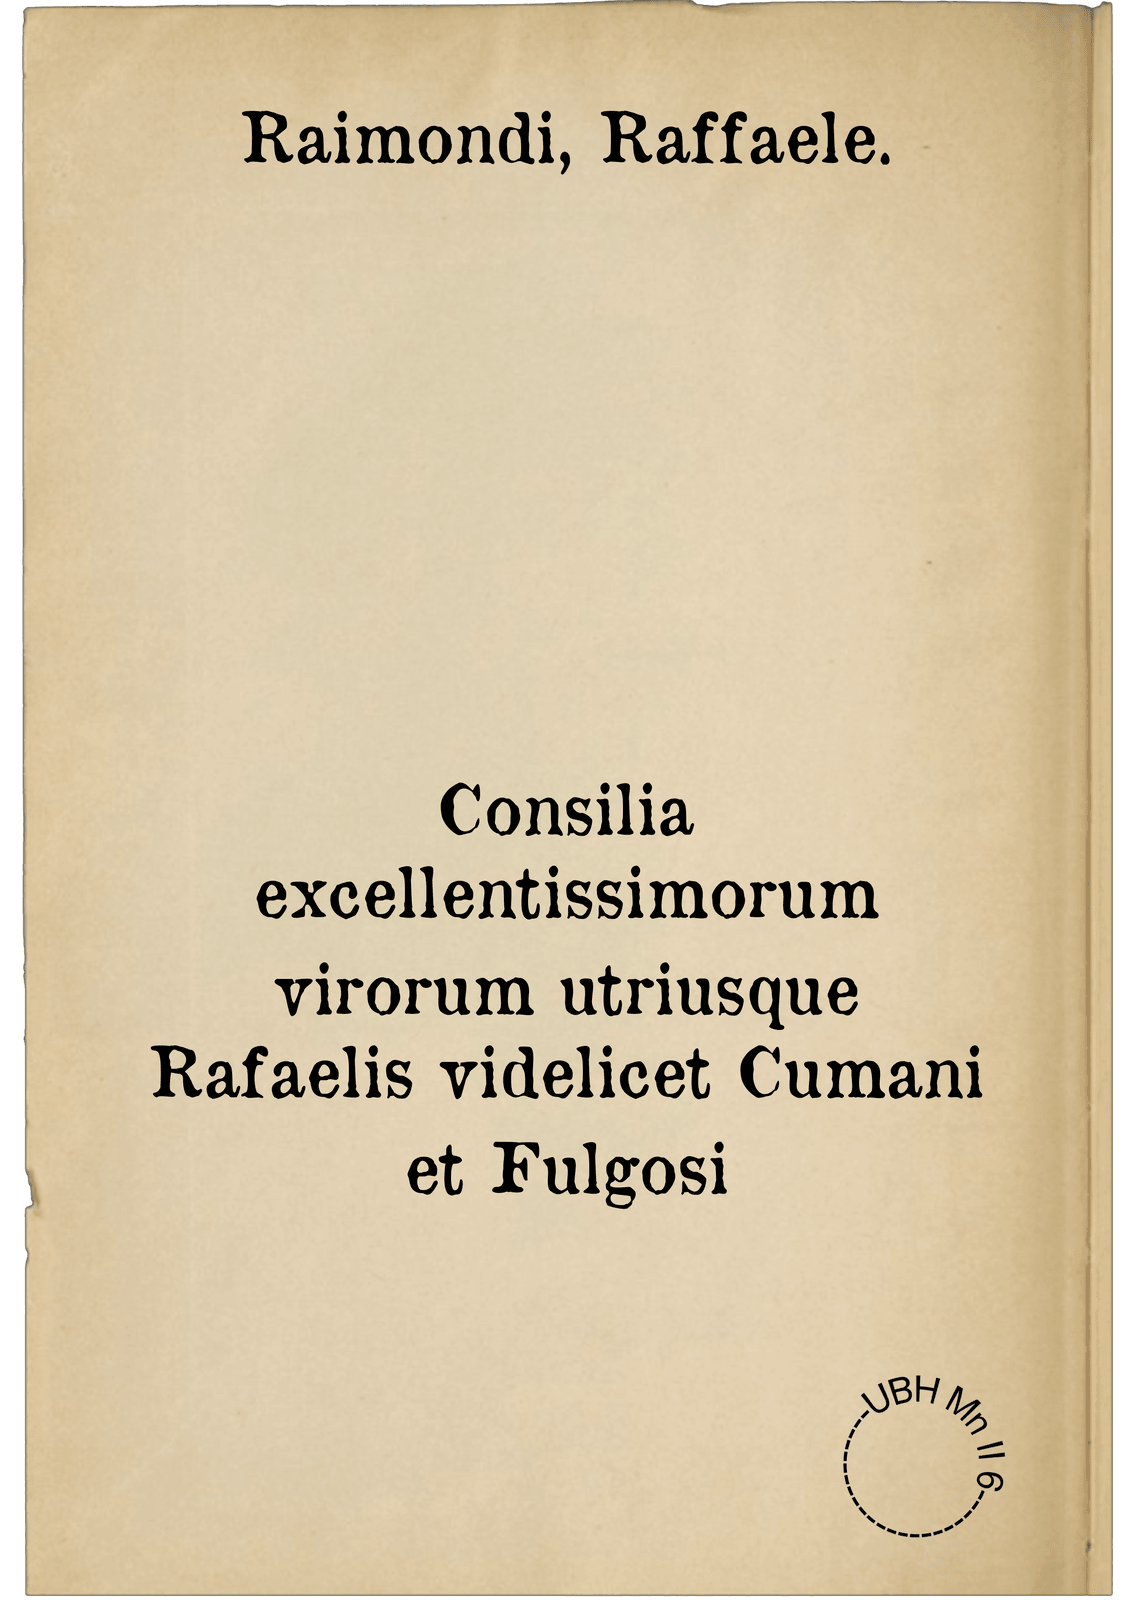 Consilia excellentissimorum virorum utriusque Rafaelis videlicet Cumani et Fulgosi